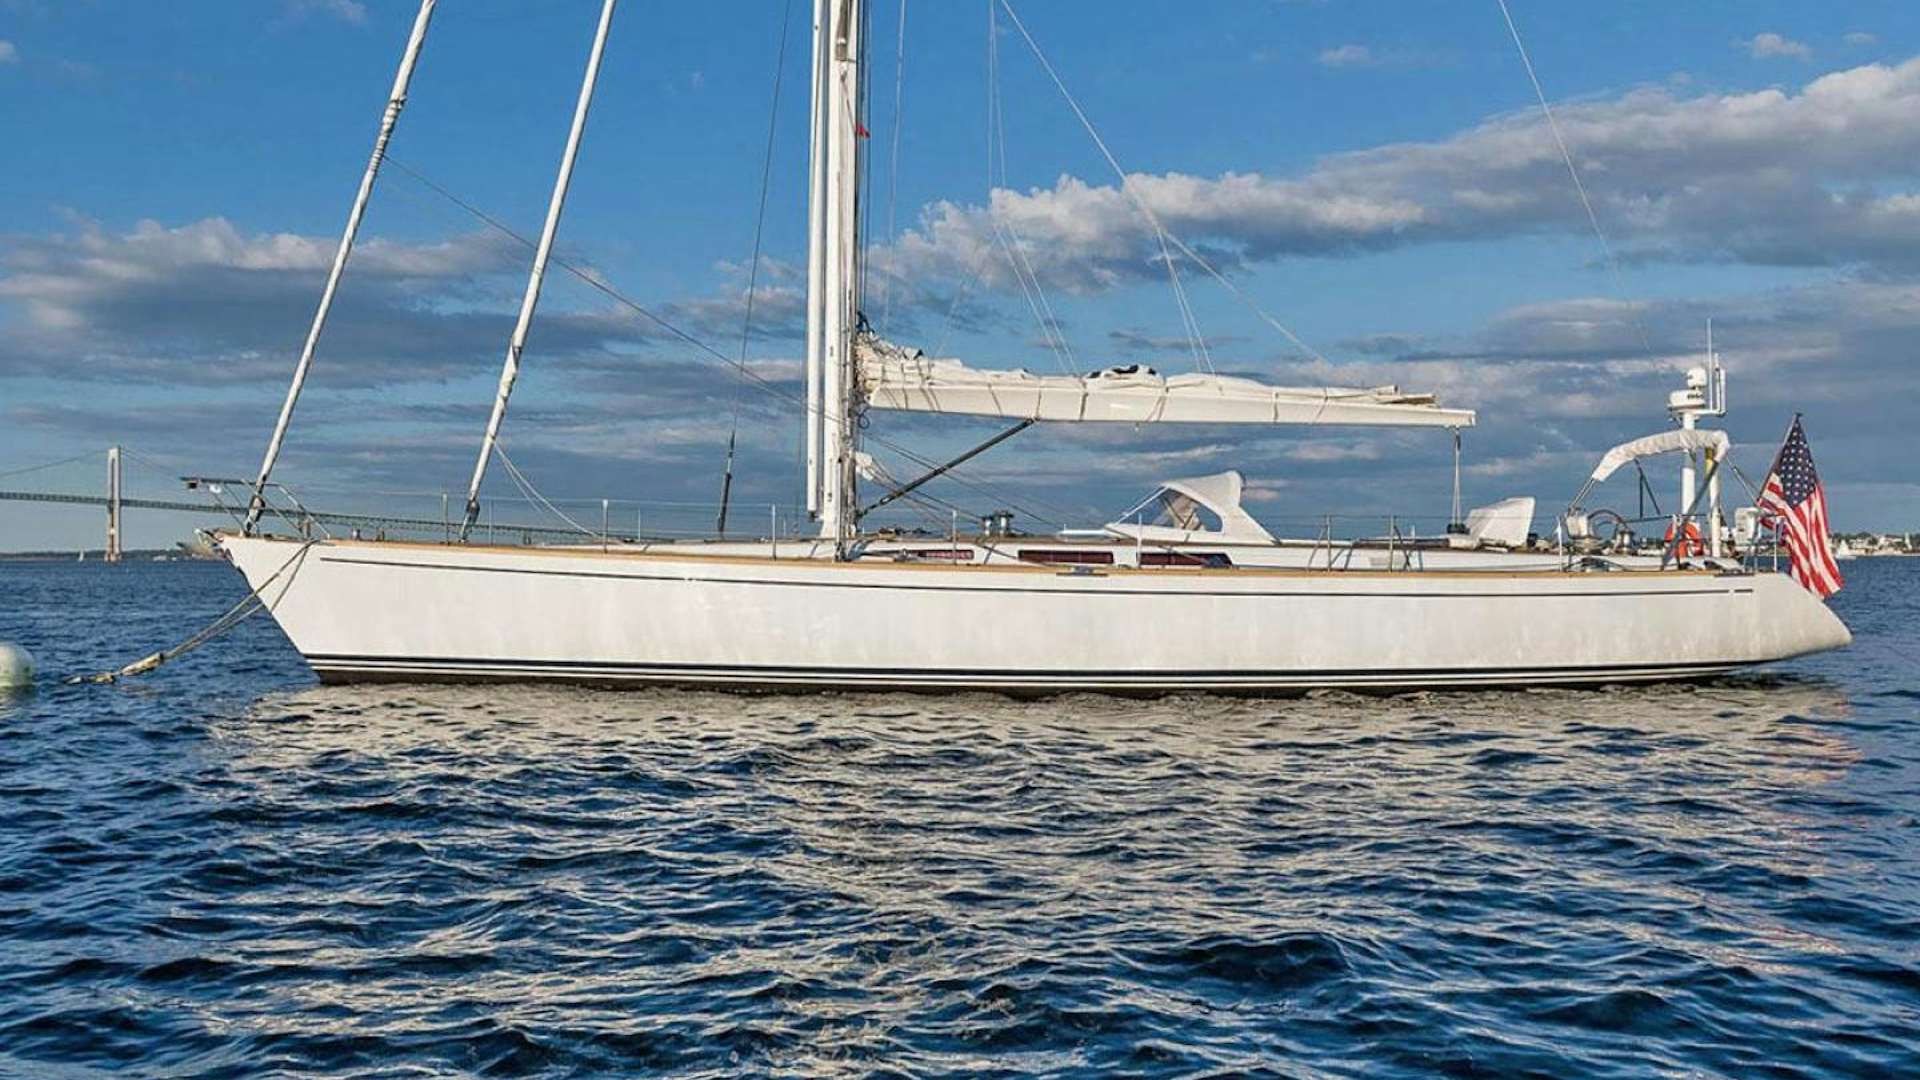 Venturous
Yacht for Sale